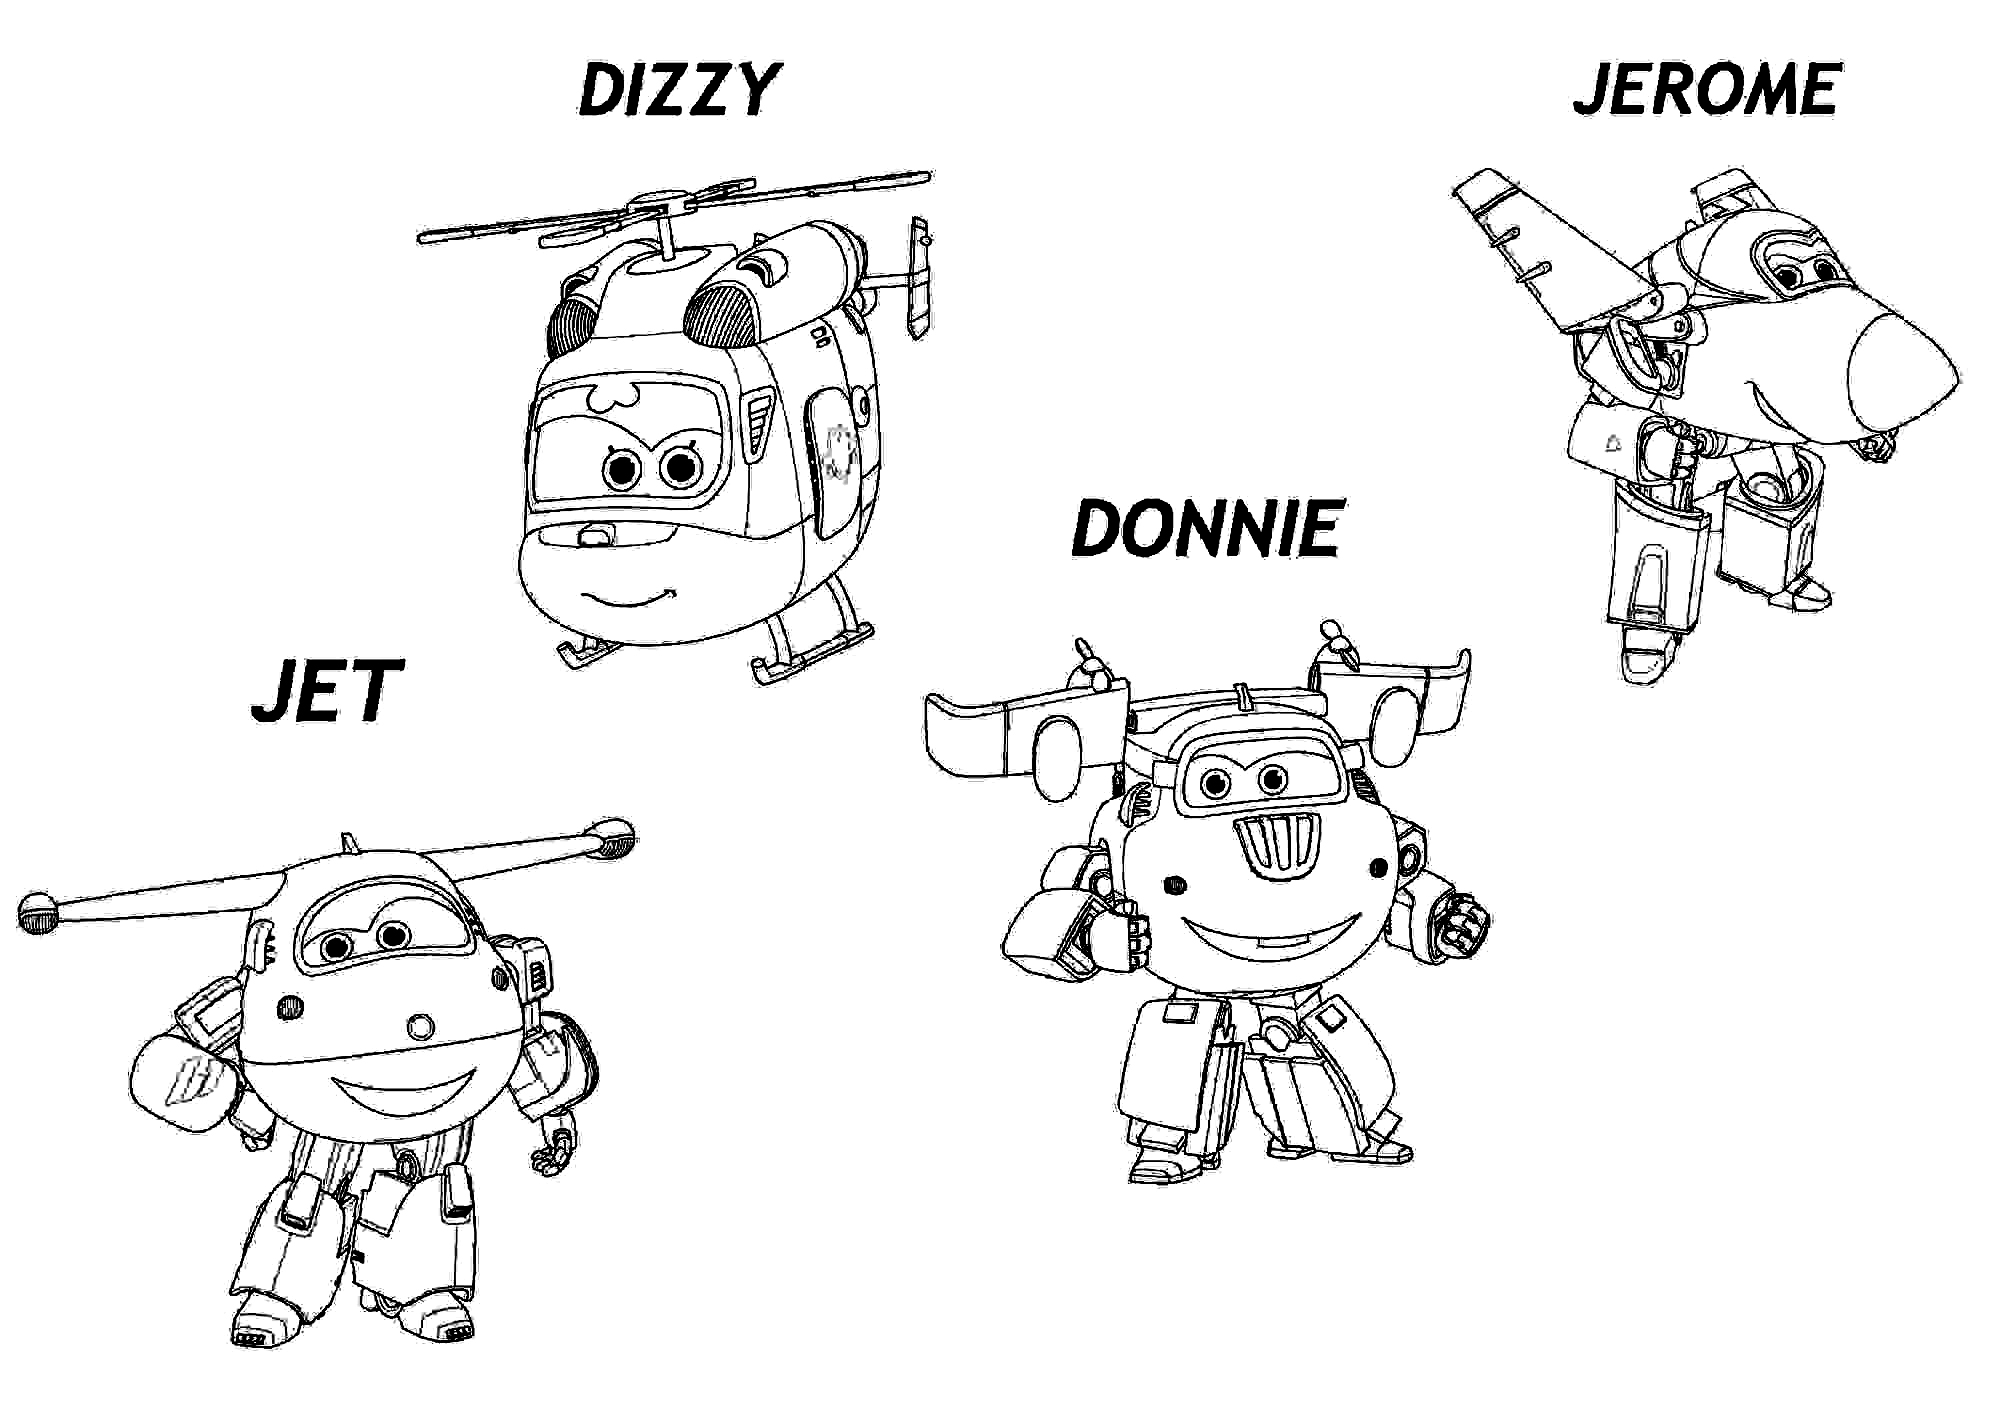 Squadra di Jett, Dizzy, Donnie e Jerome dalla pagina da colorare di Super Wings